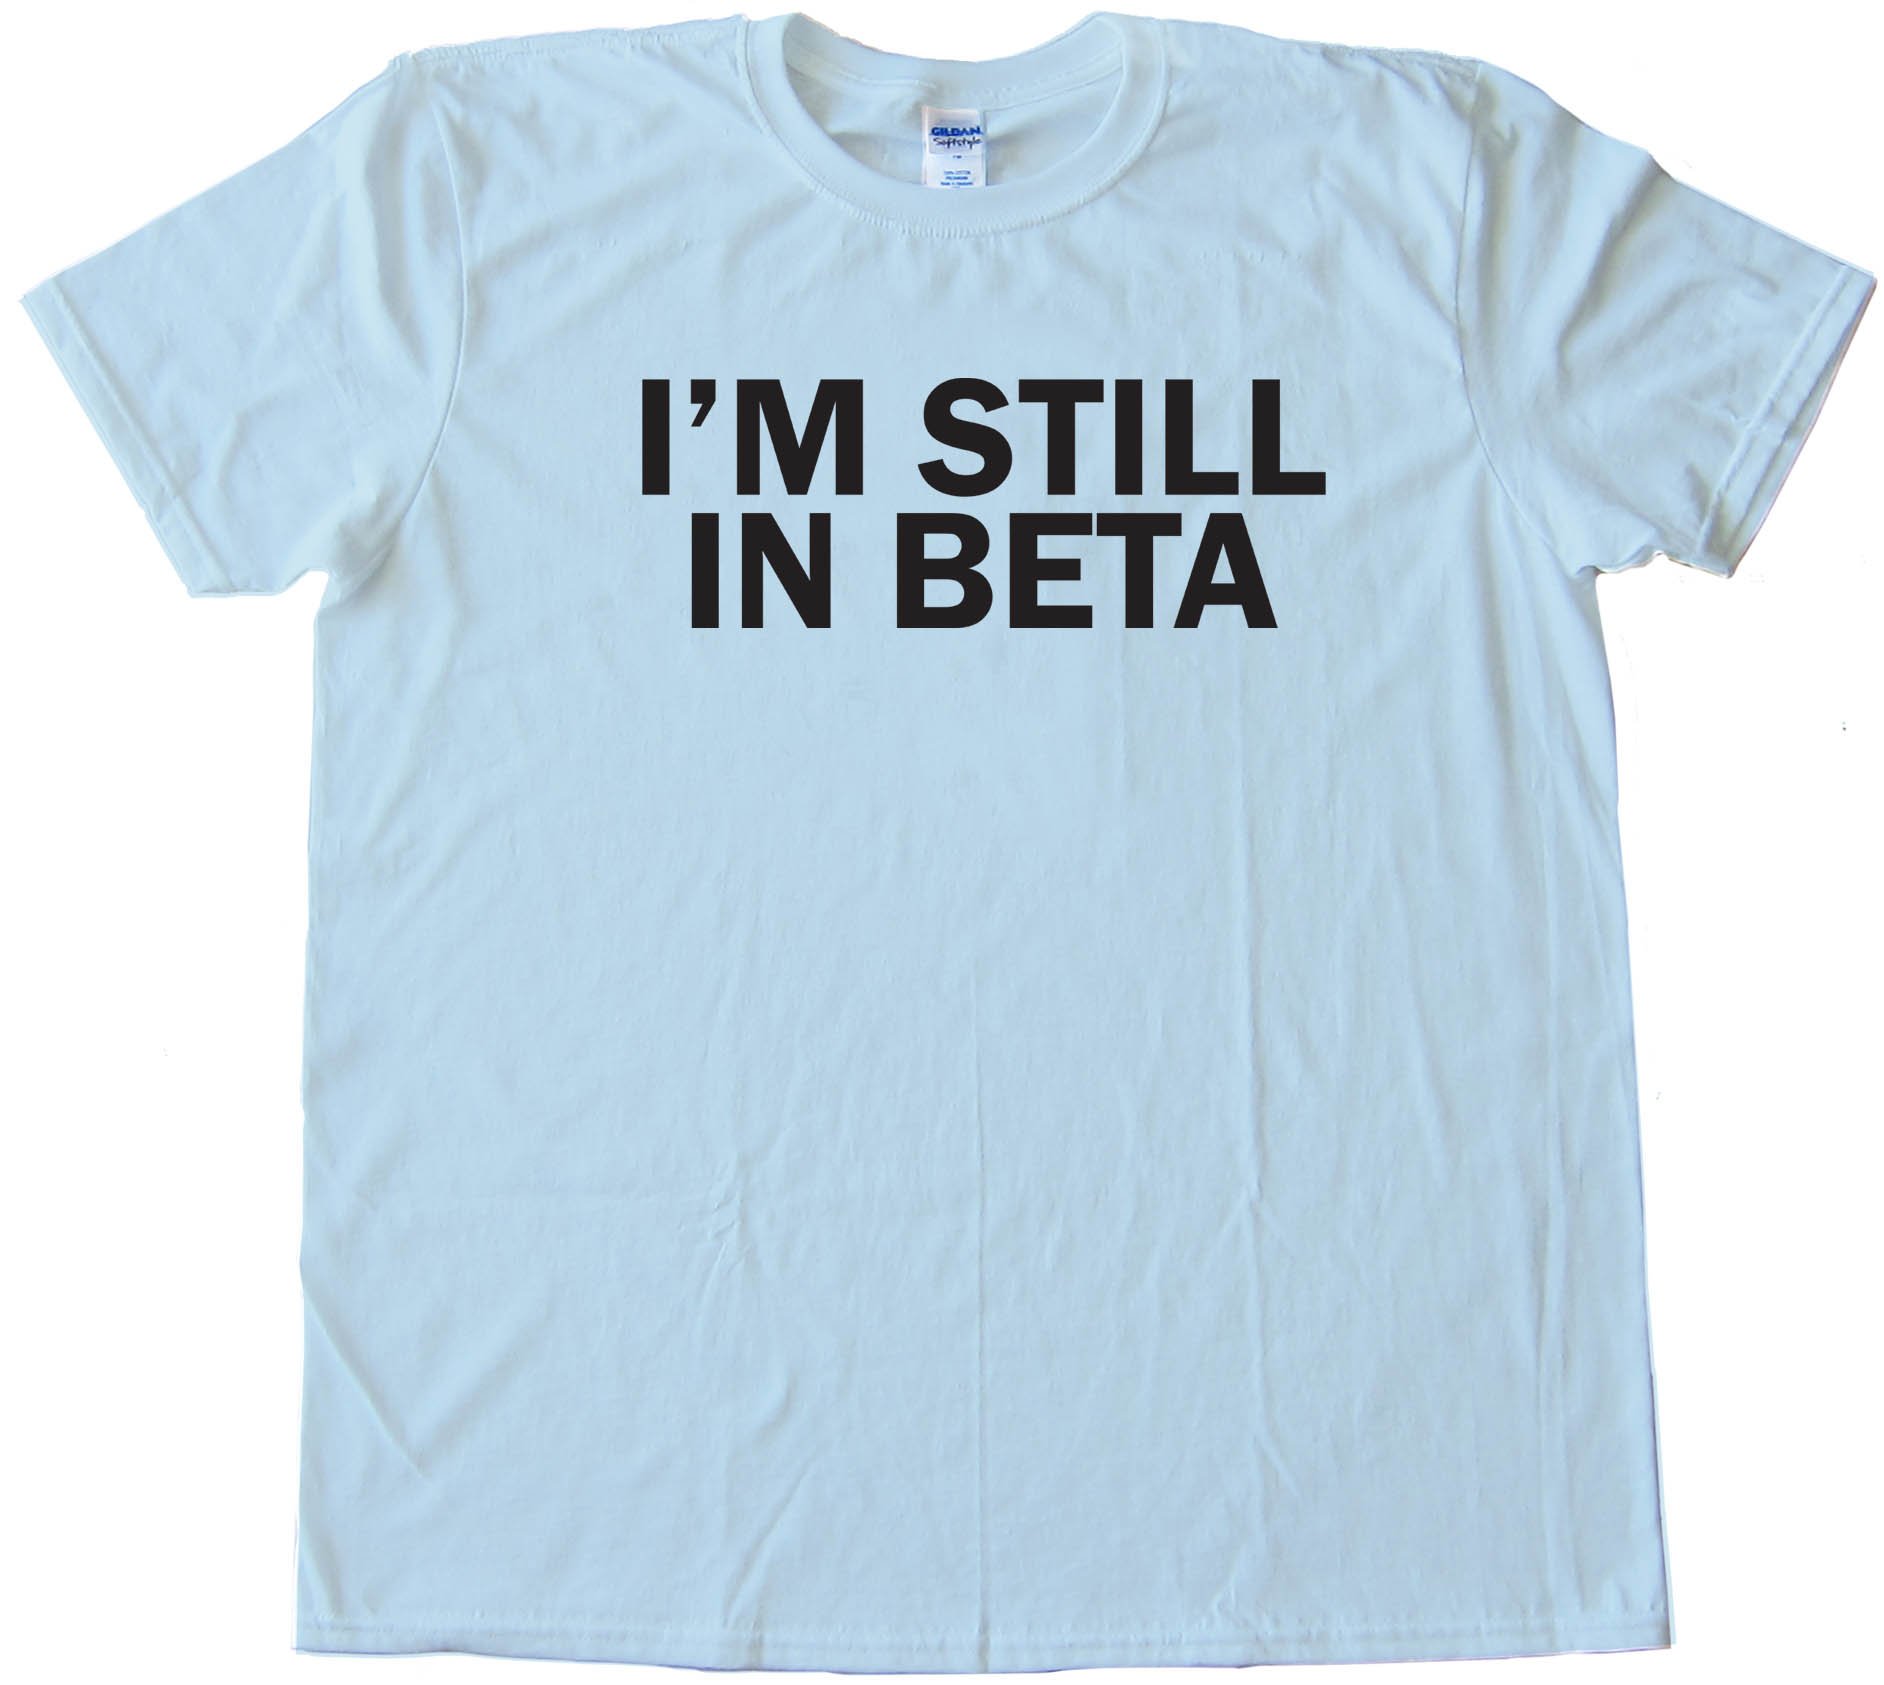 I'M Still In Beta - Tee Shirt